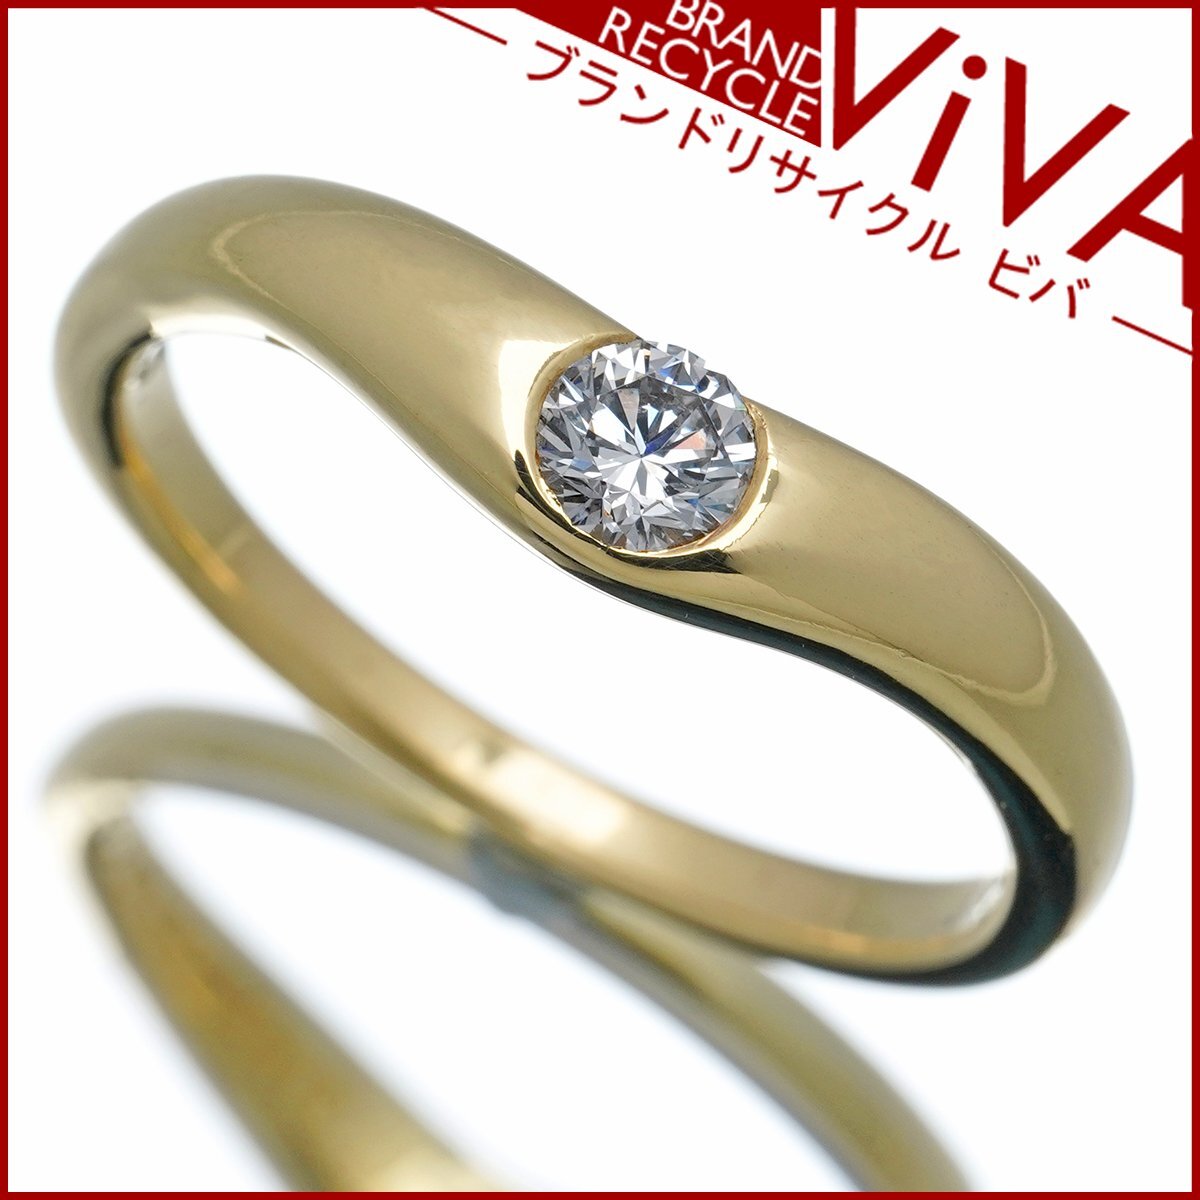 ティファニー カーブドバンド ワイド ダイヤモンド リング 指輪 0.18ct K18YG 14号 美品 新品仕上げ済み ゆうパケット対応可能 送料300円